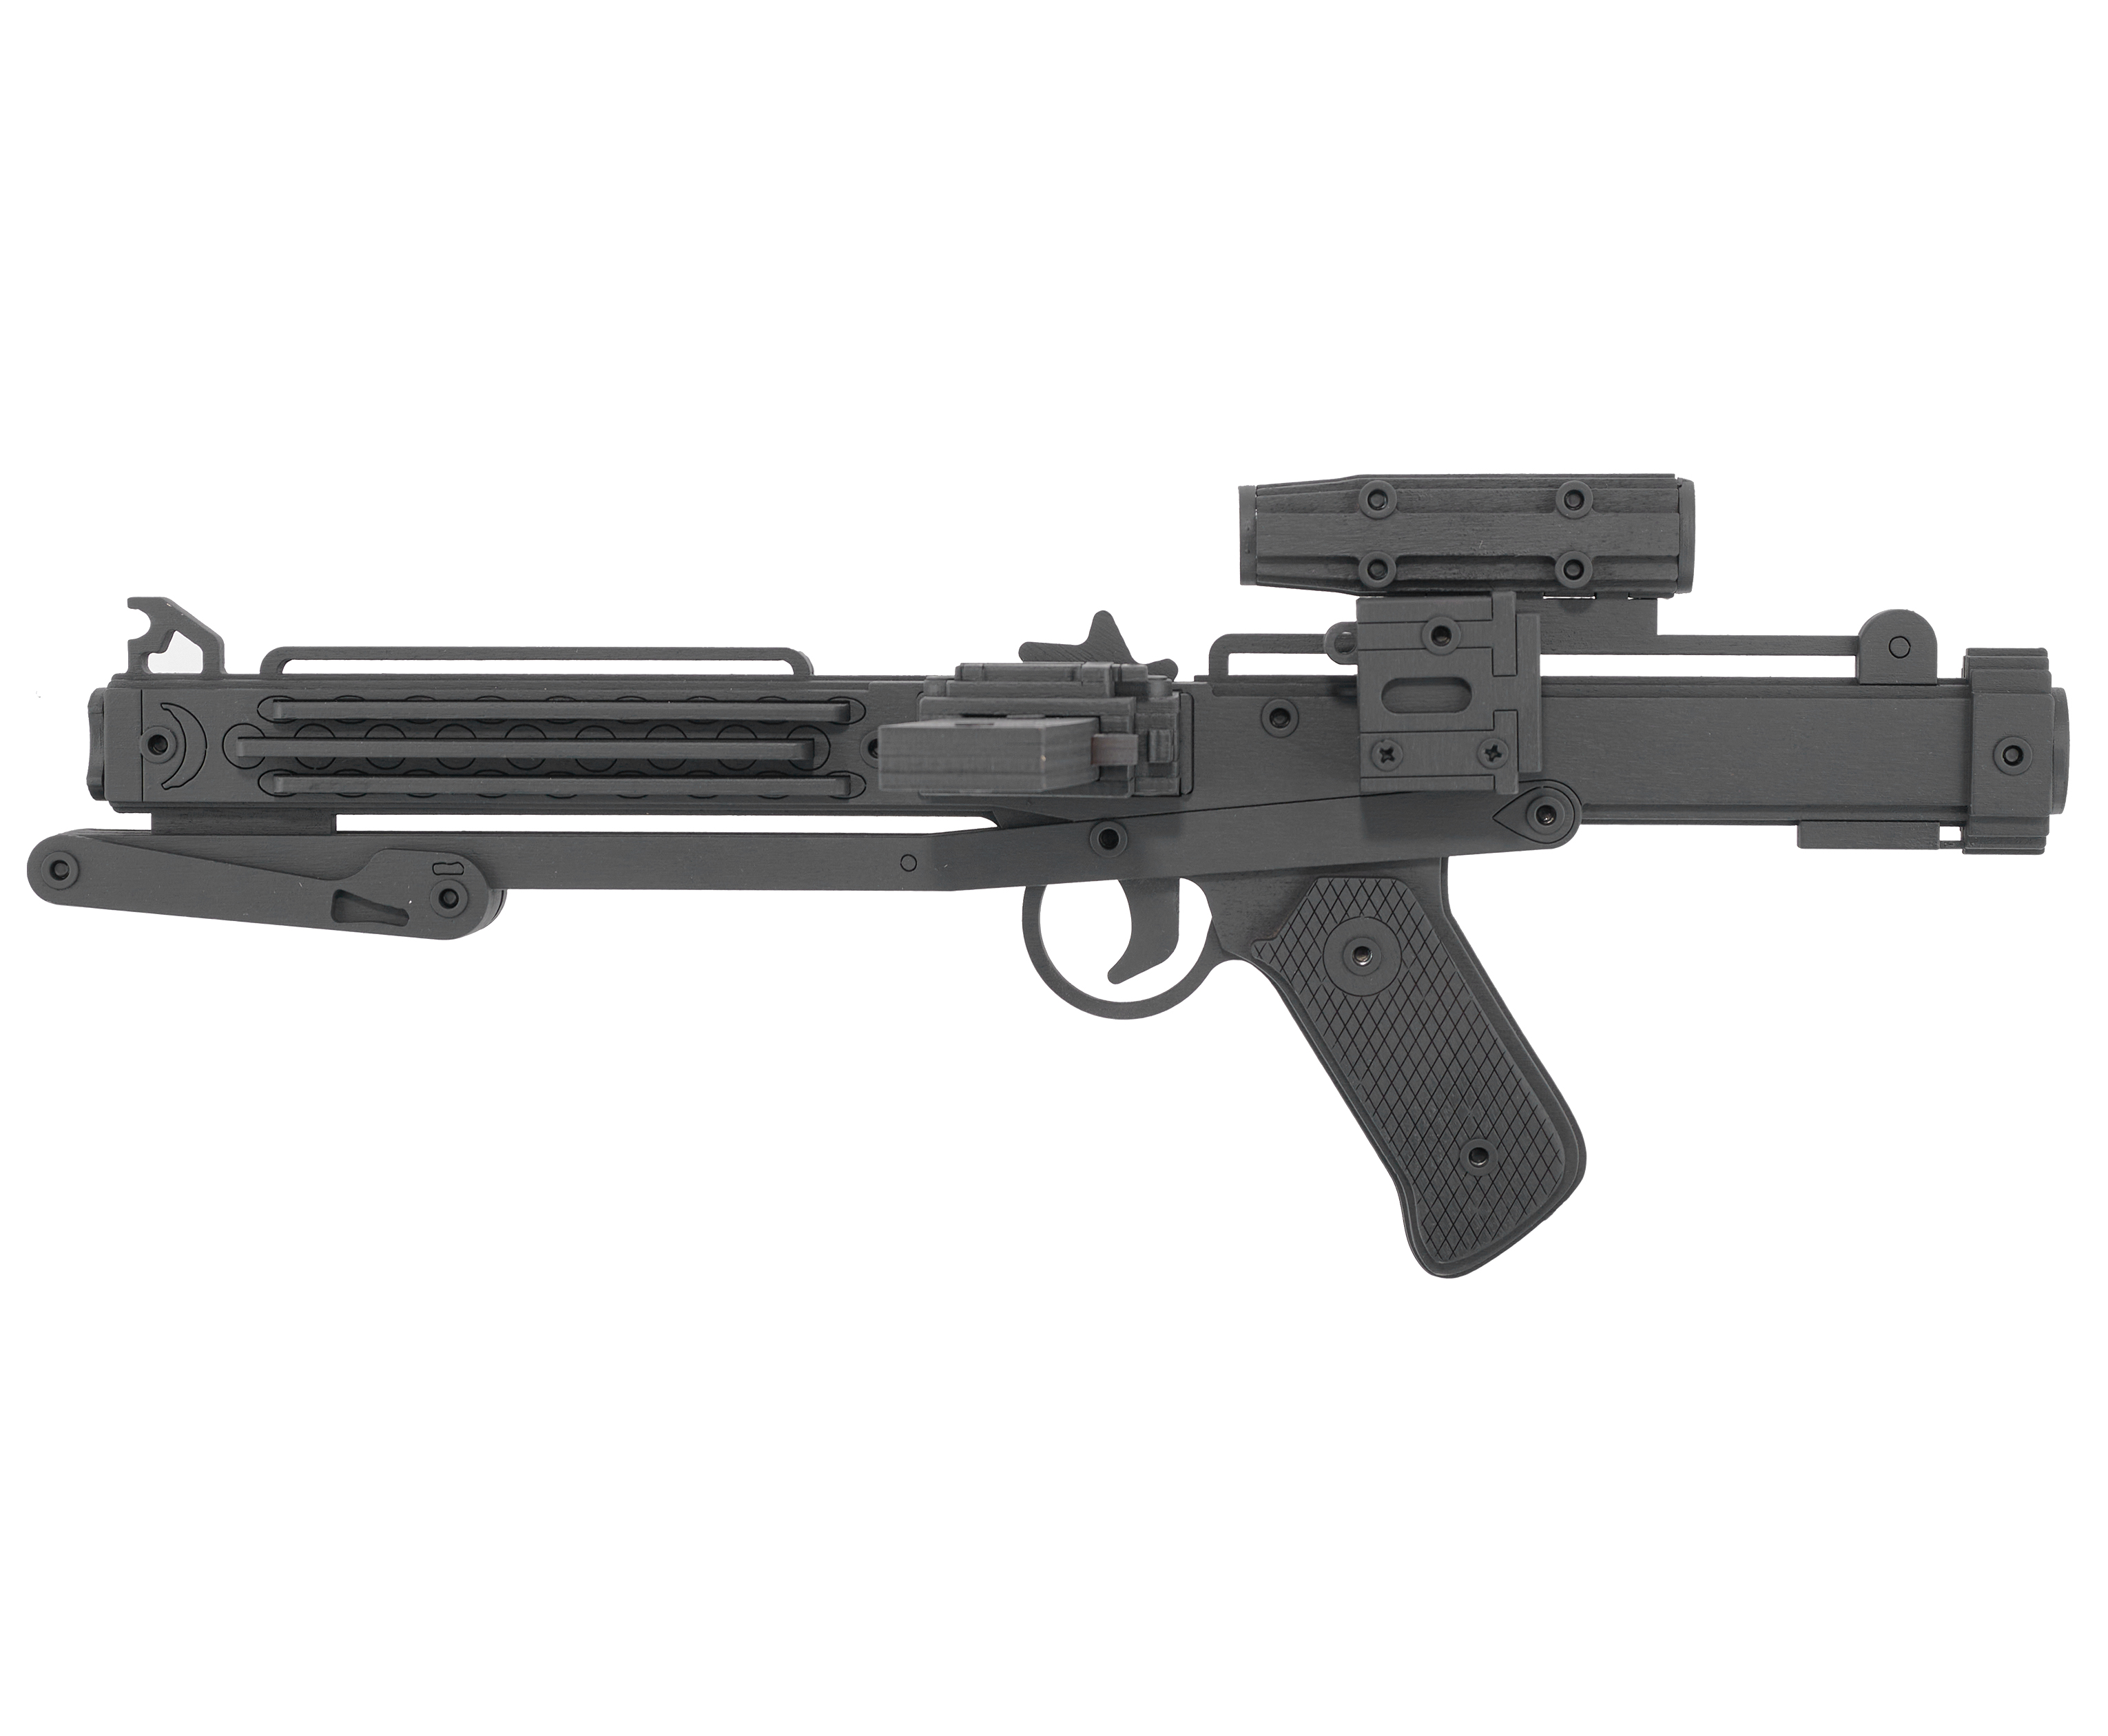 Резинкострел игрушечный Arma toys лазерная винтовка E-11 макет, Star Wars, AT011 резинкострел arma toys револьвер frings макет ат002